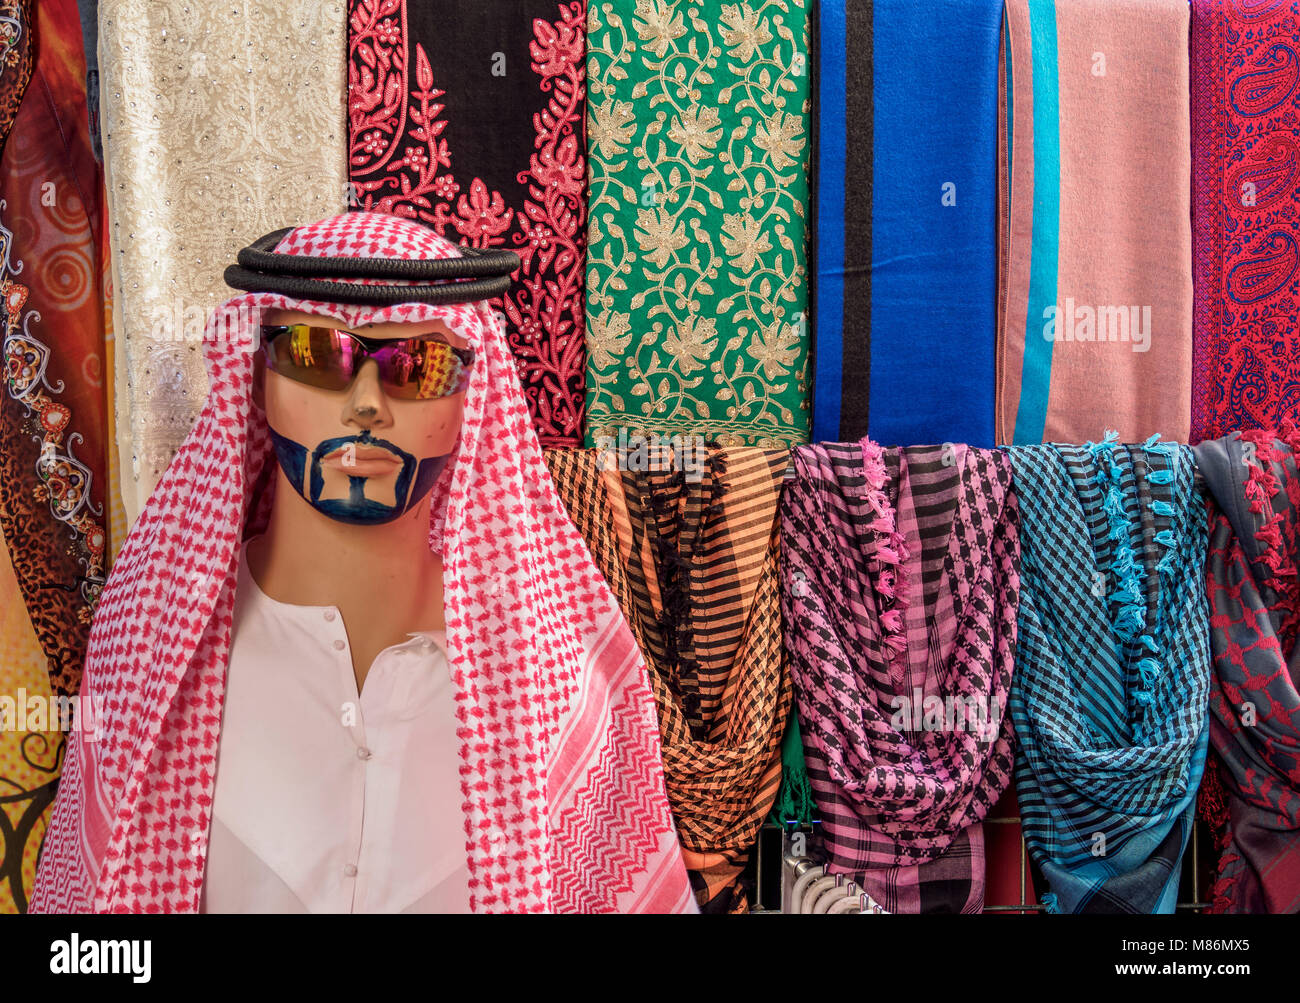 Traditional Clothing sold on the souk, Deira, Dubai, United Arab Emirates Stock Photo